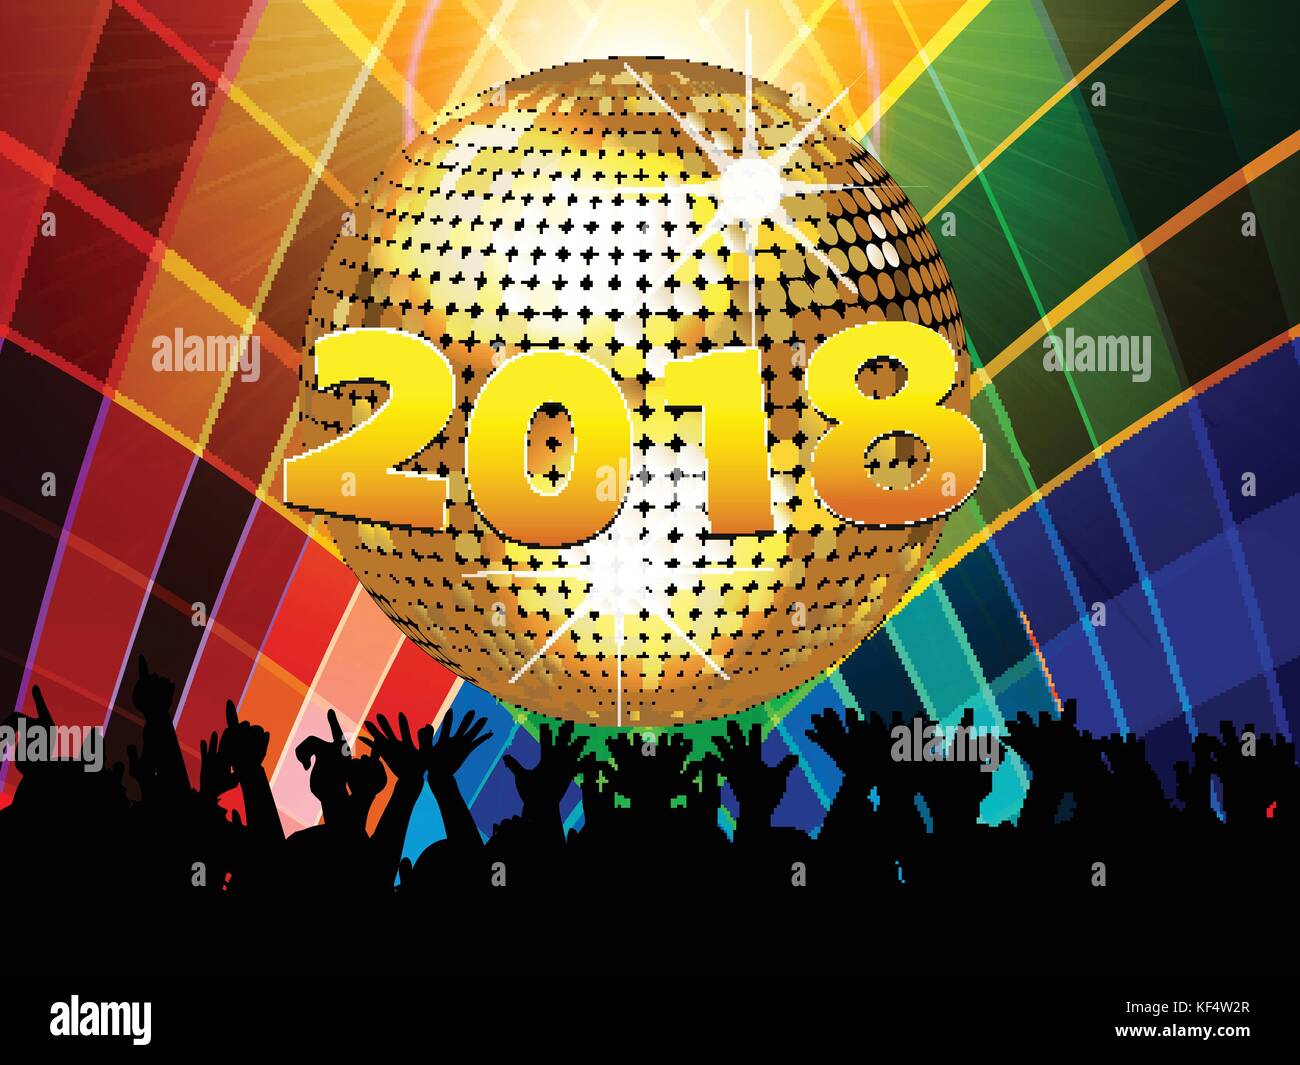 Nouvelles années vingt dix-huitième célébration contexte multicolores avec boule disco foule et 2018 en chiffres Illustration de Vecteur